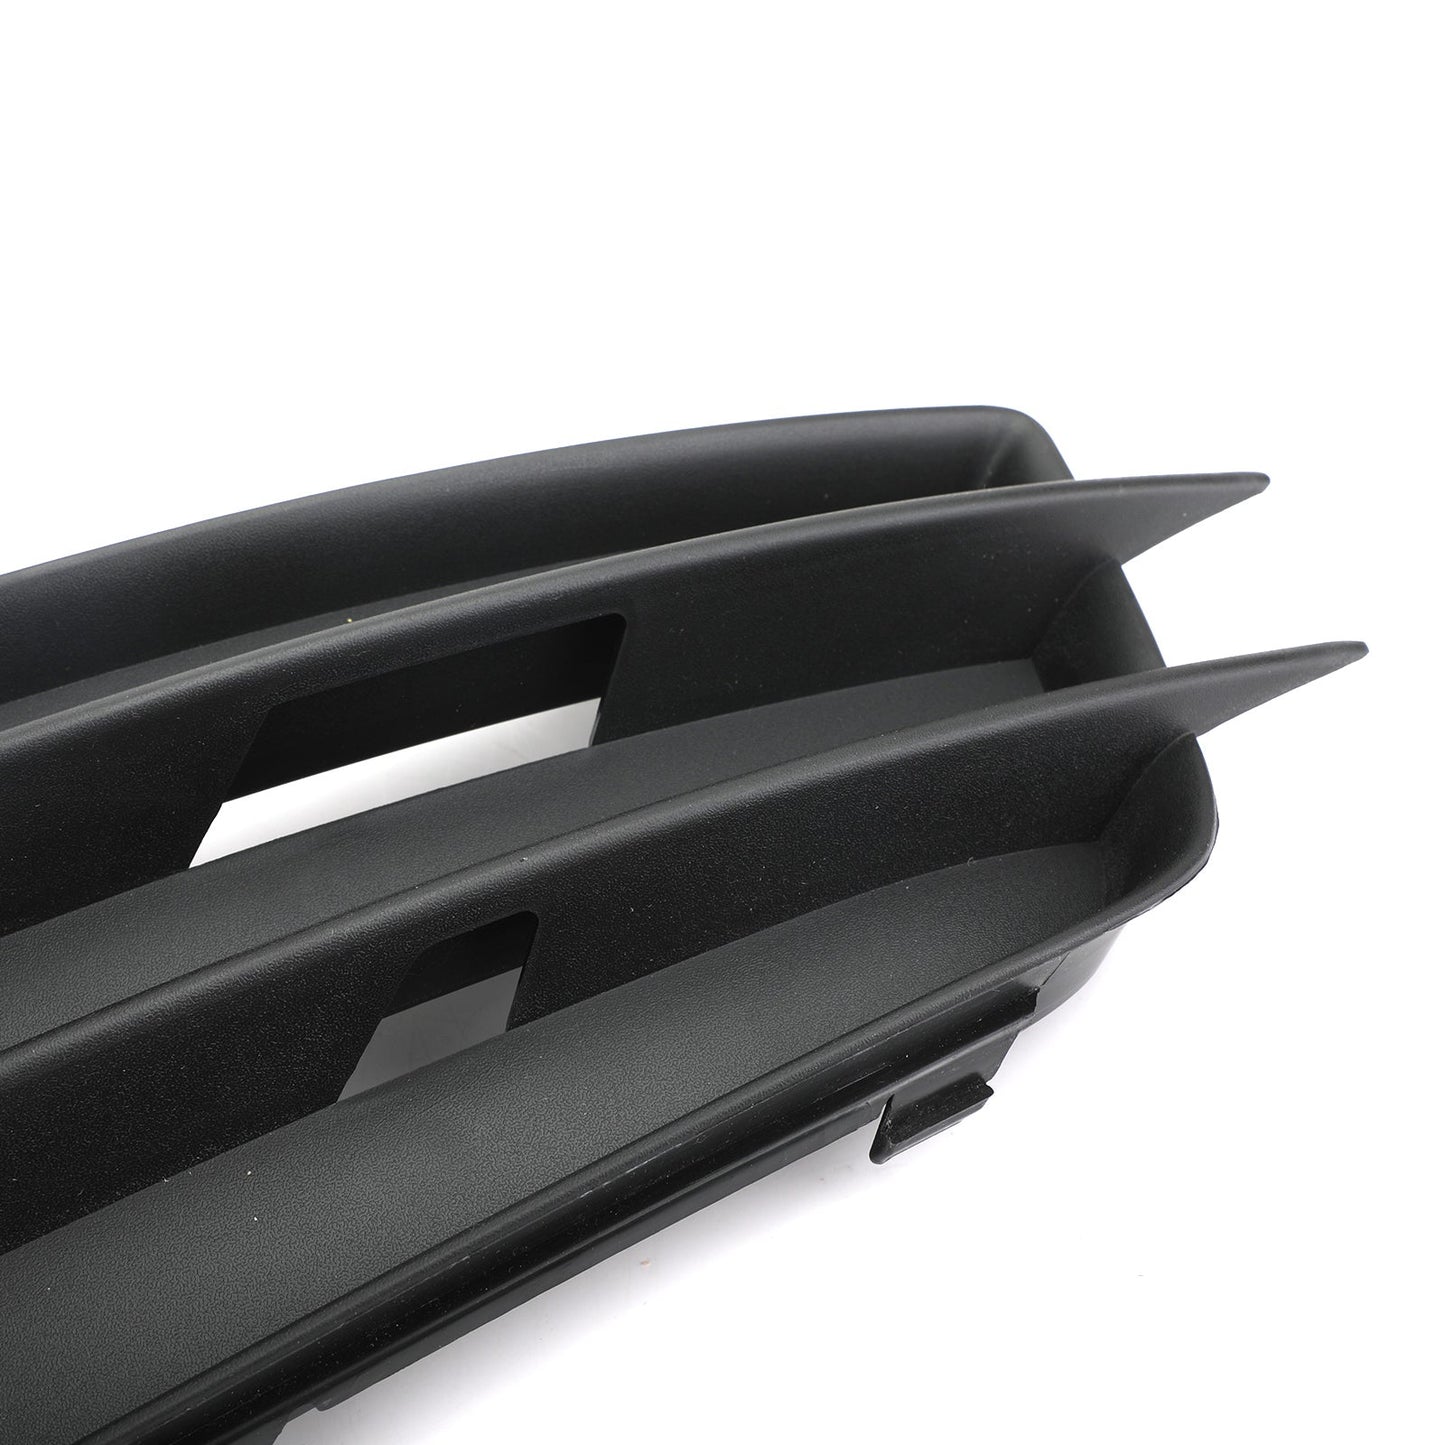 Linke Seite matt schwarzem Nebel Licht Grill S-Line-Stoßfänger für Audi A4 B8 2008-2012 Generic